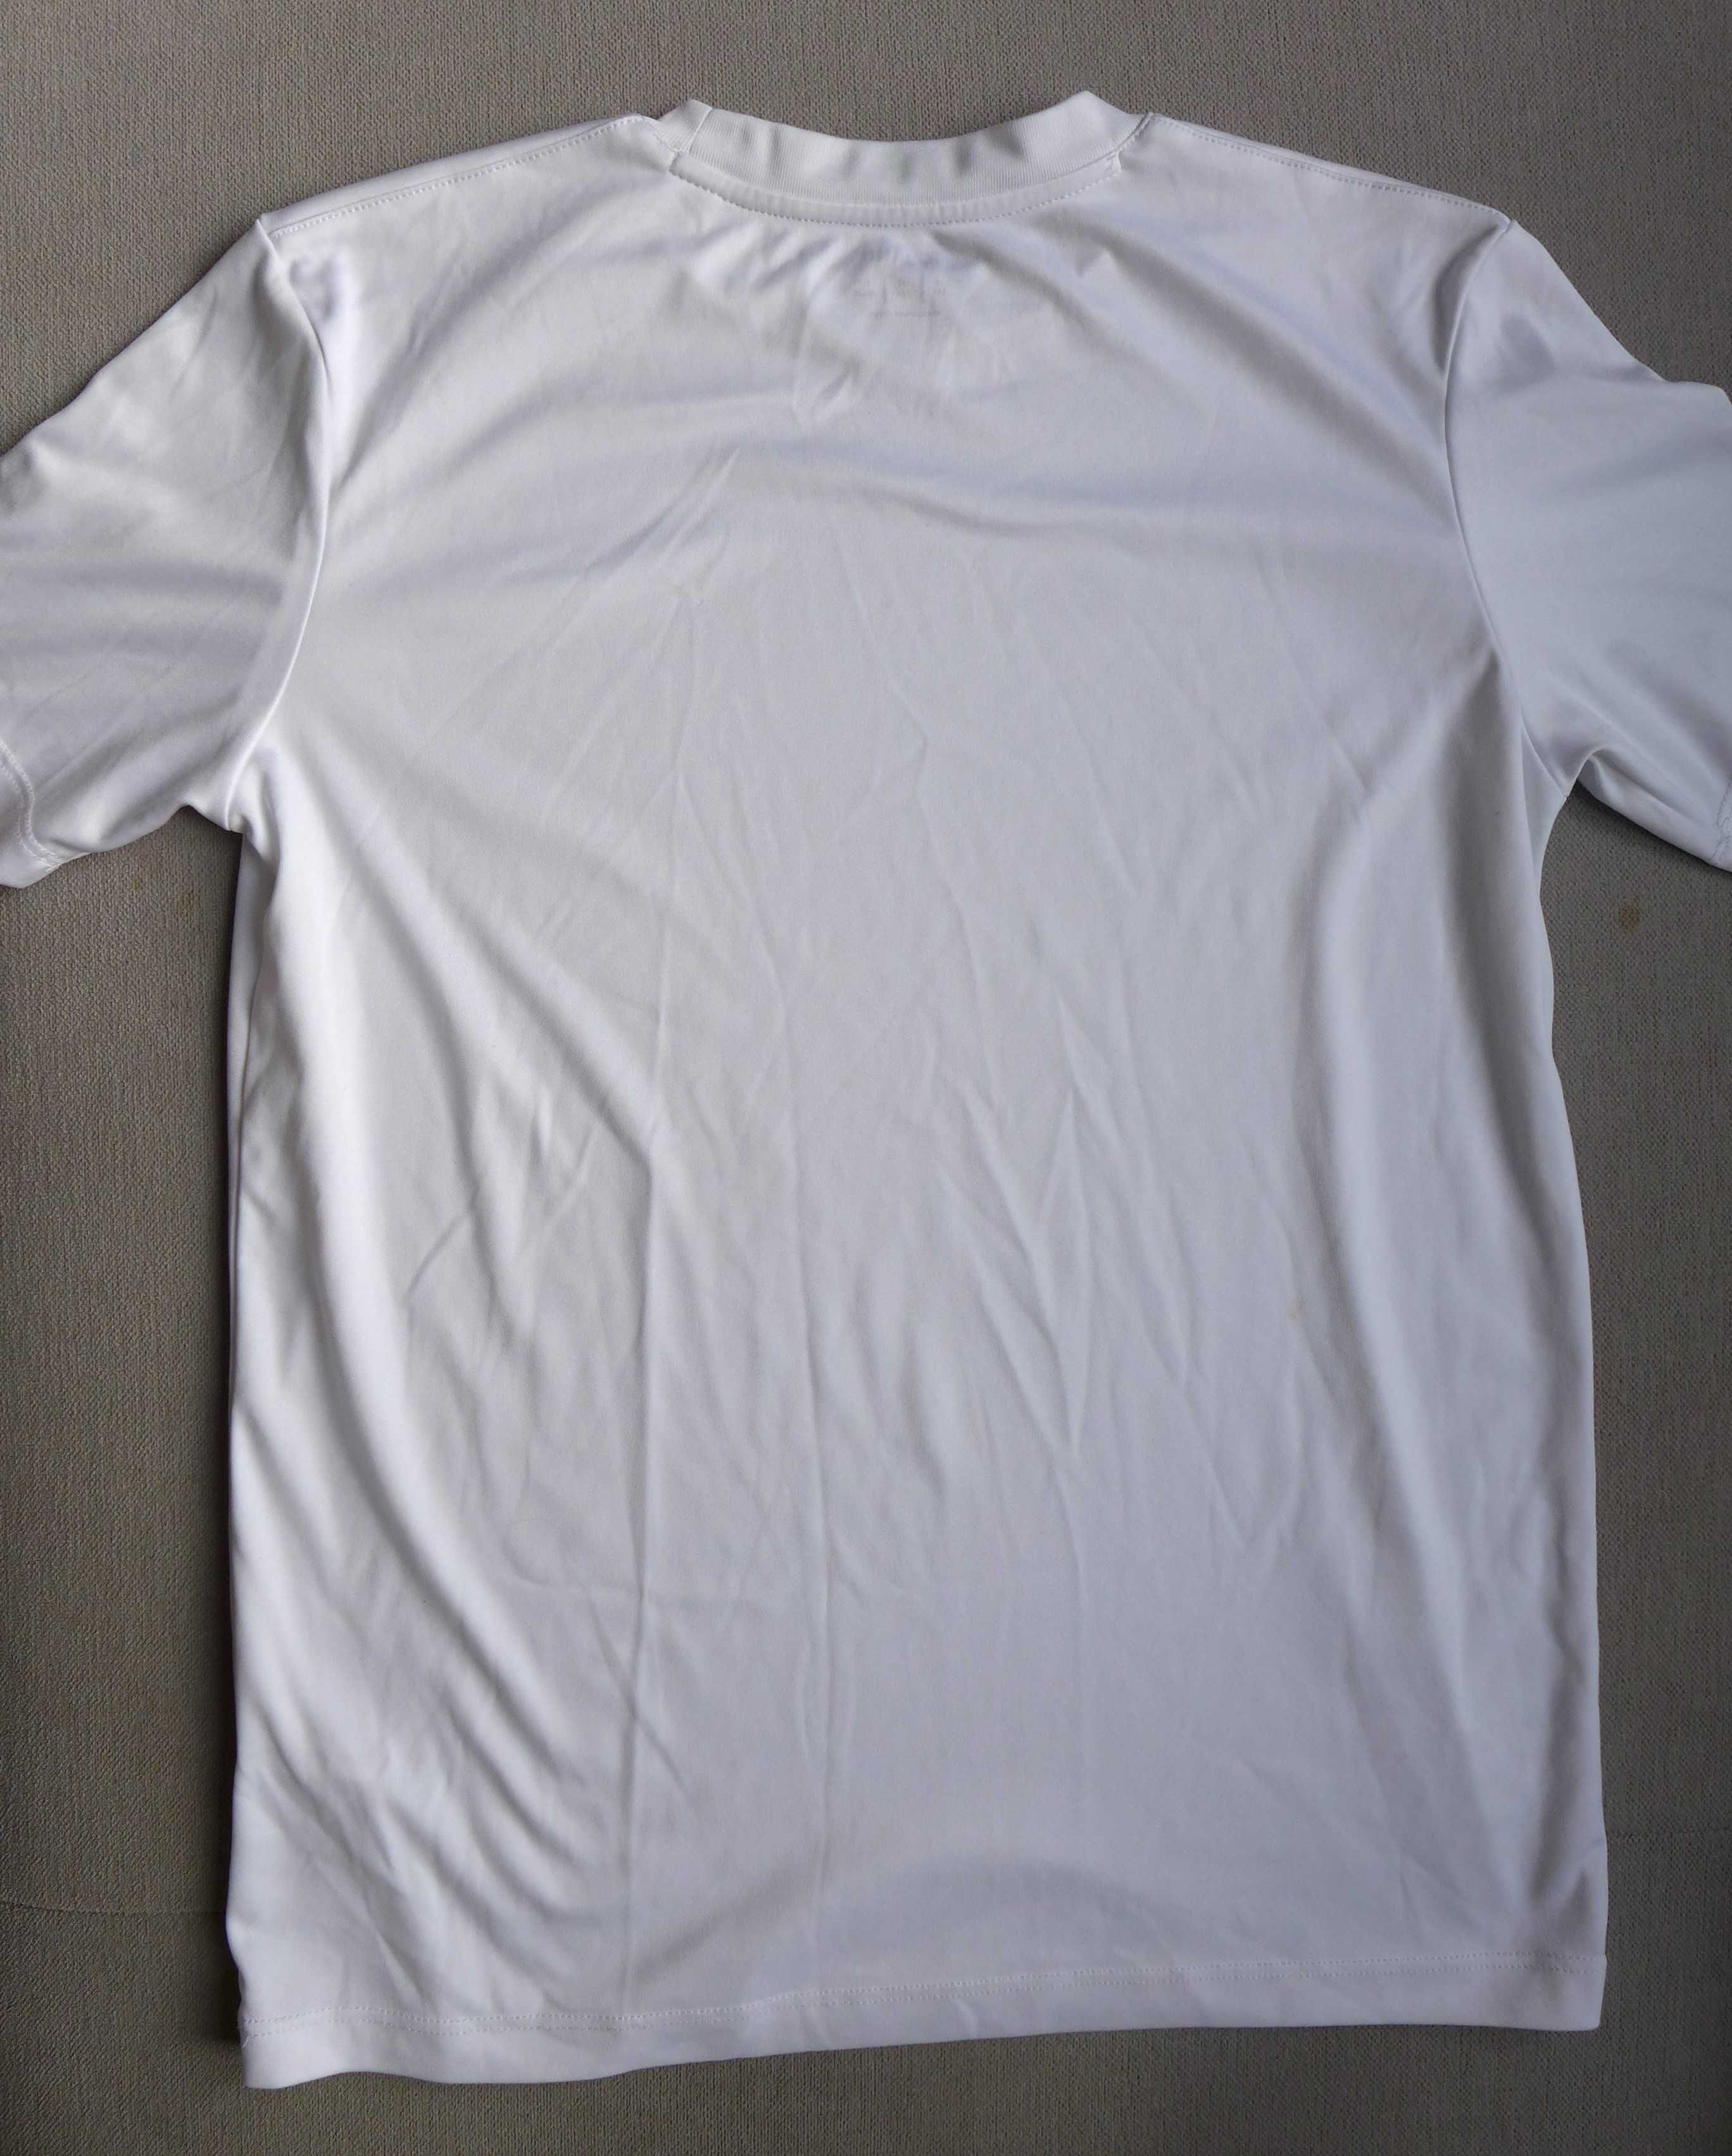 JAKO T-shirt techniczna fitnes siłownia bluzka koszulka sportowa XS 34